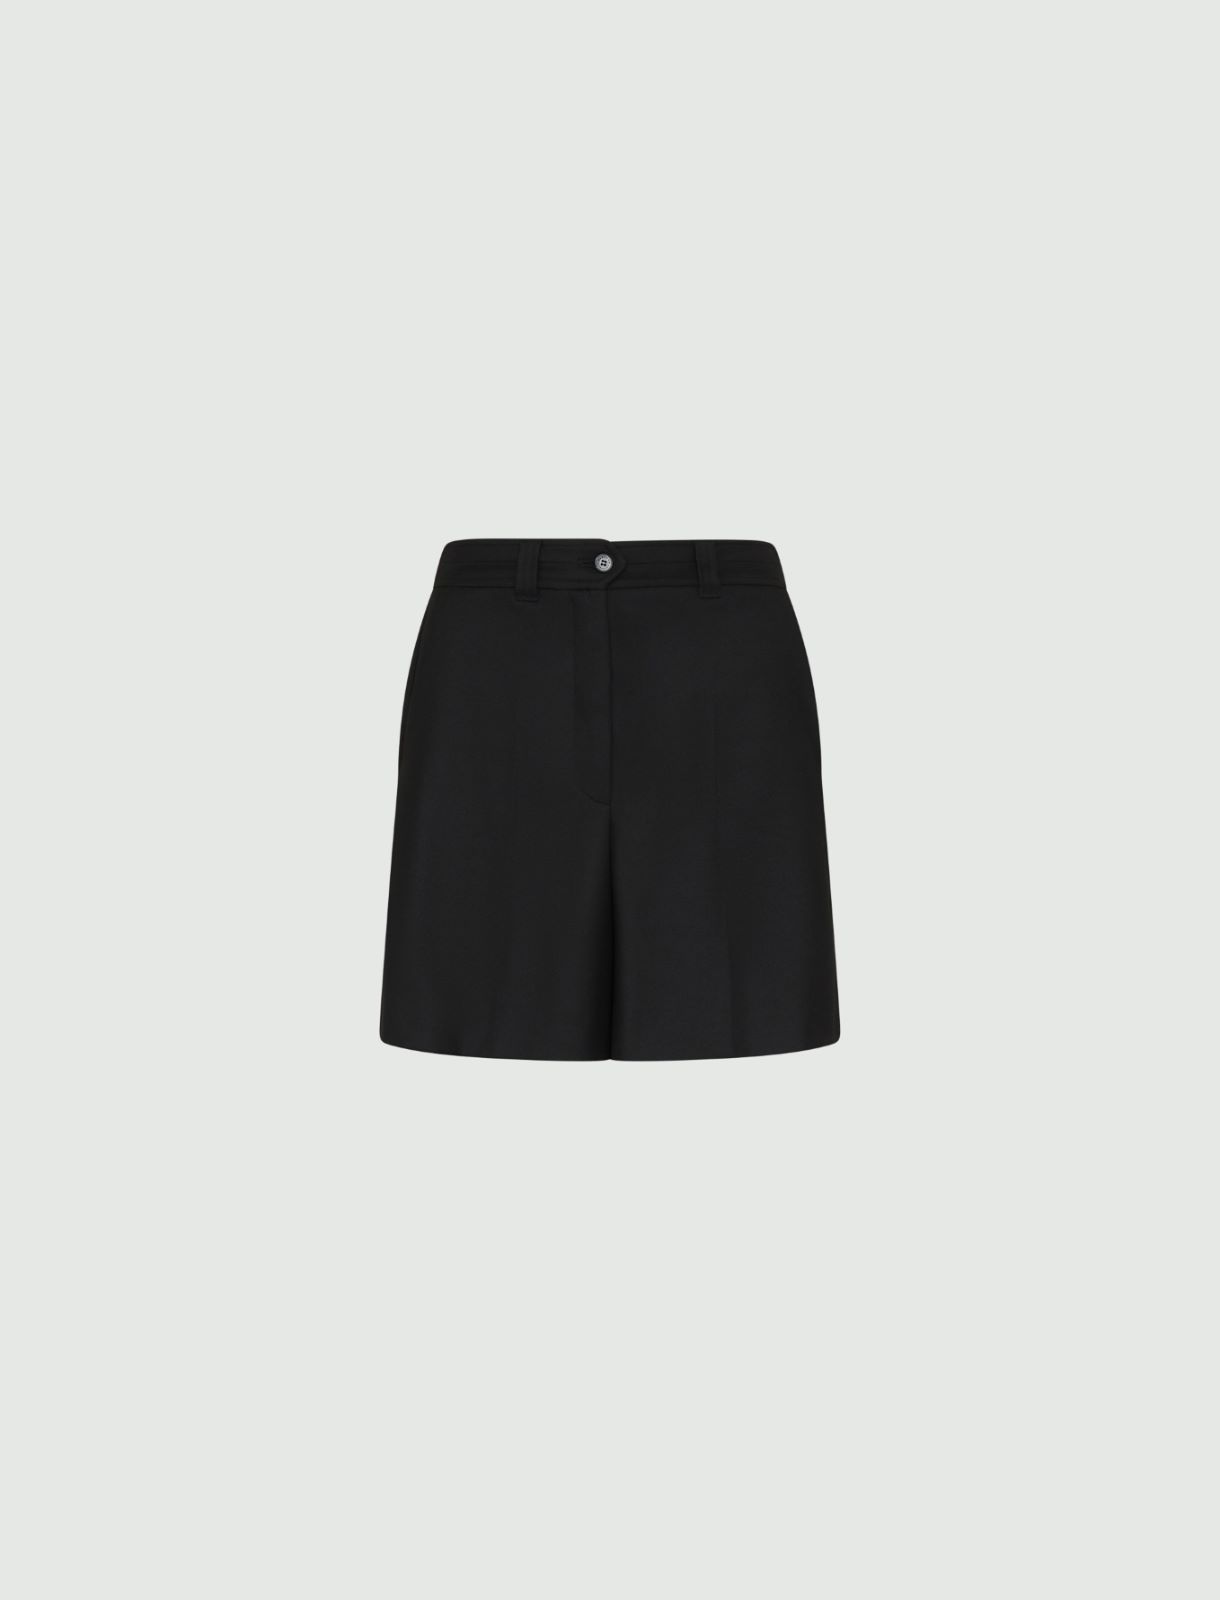 Flannel shorts - Black - Marella - 5